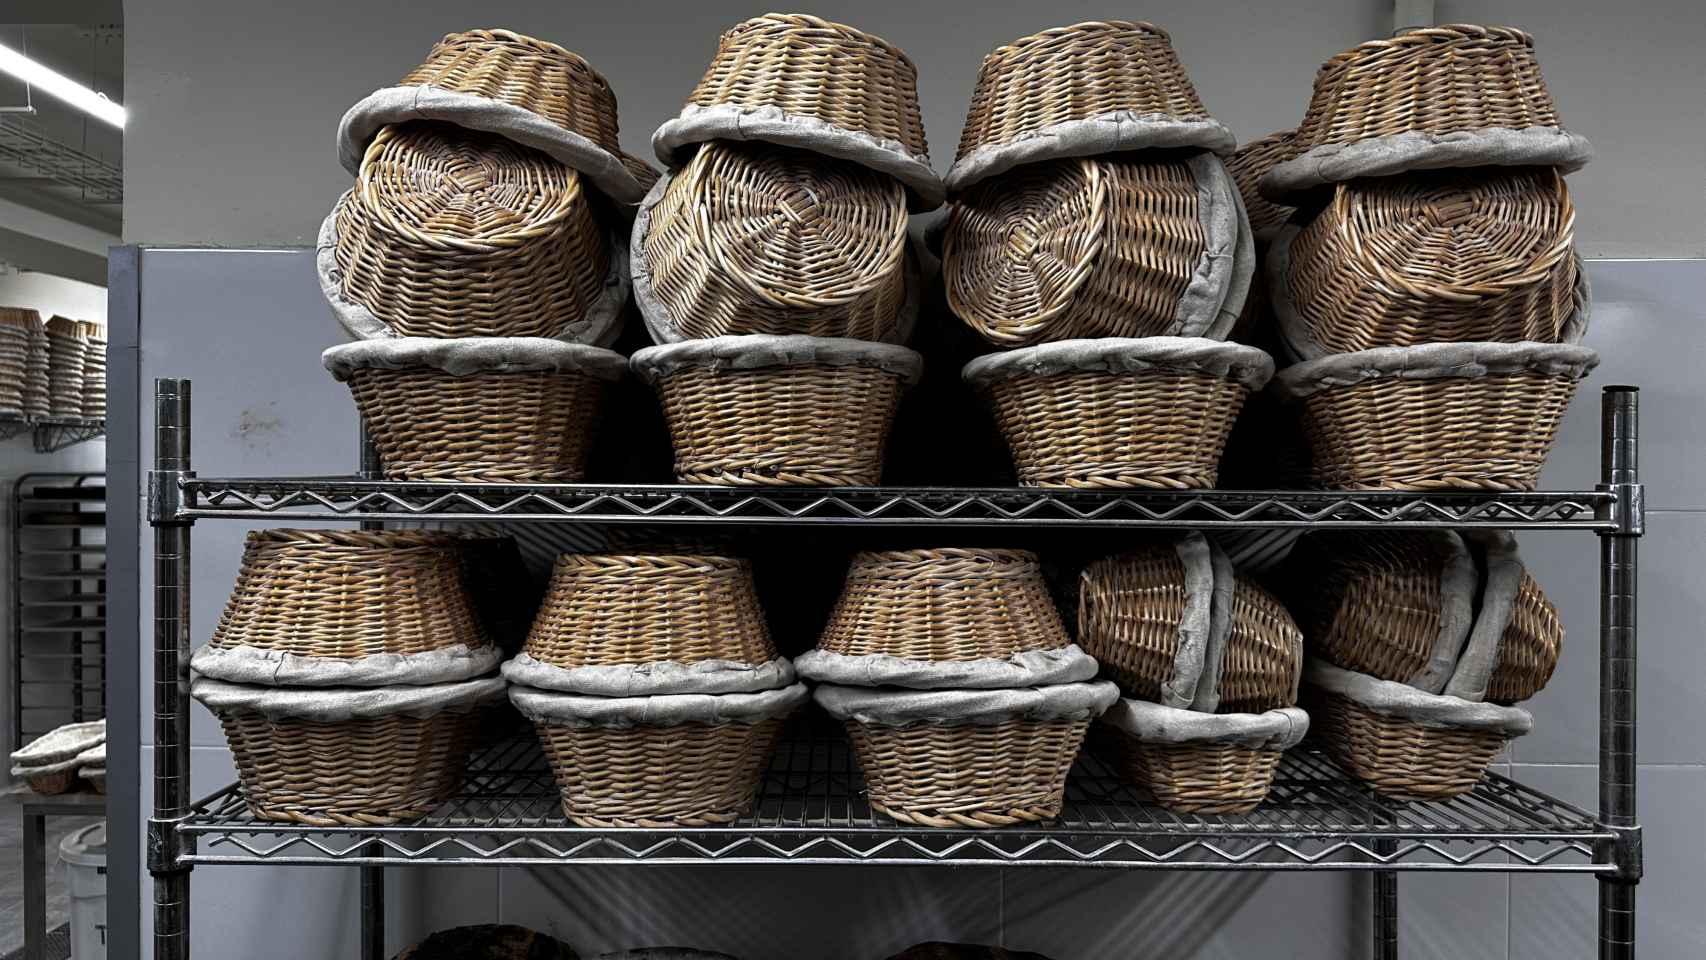 Las cestas de Villaconejos con los que este obrador madrileño conquista las panaderías del mundo